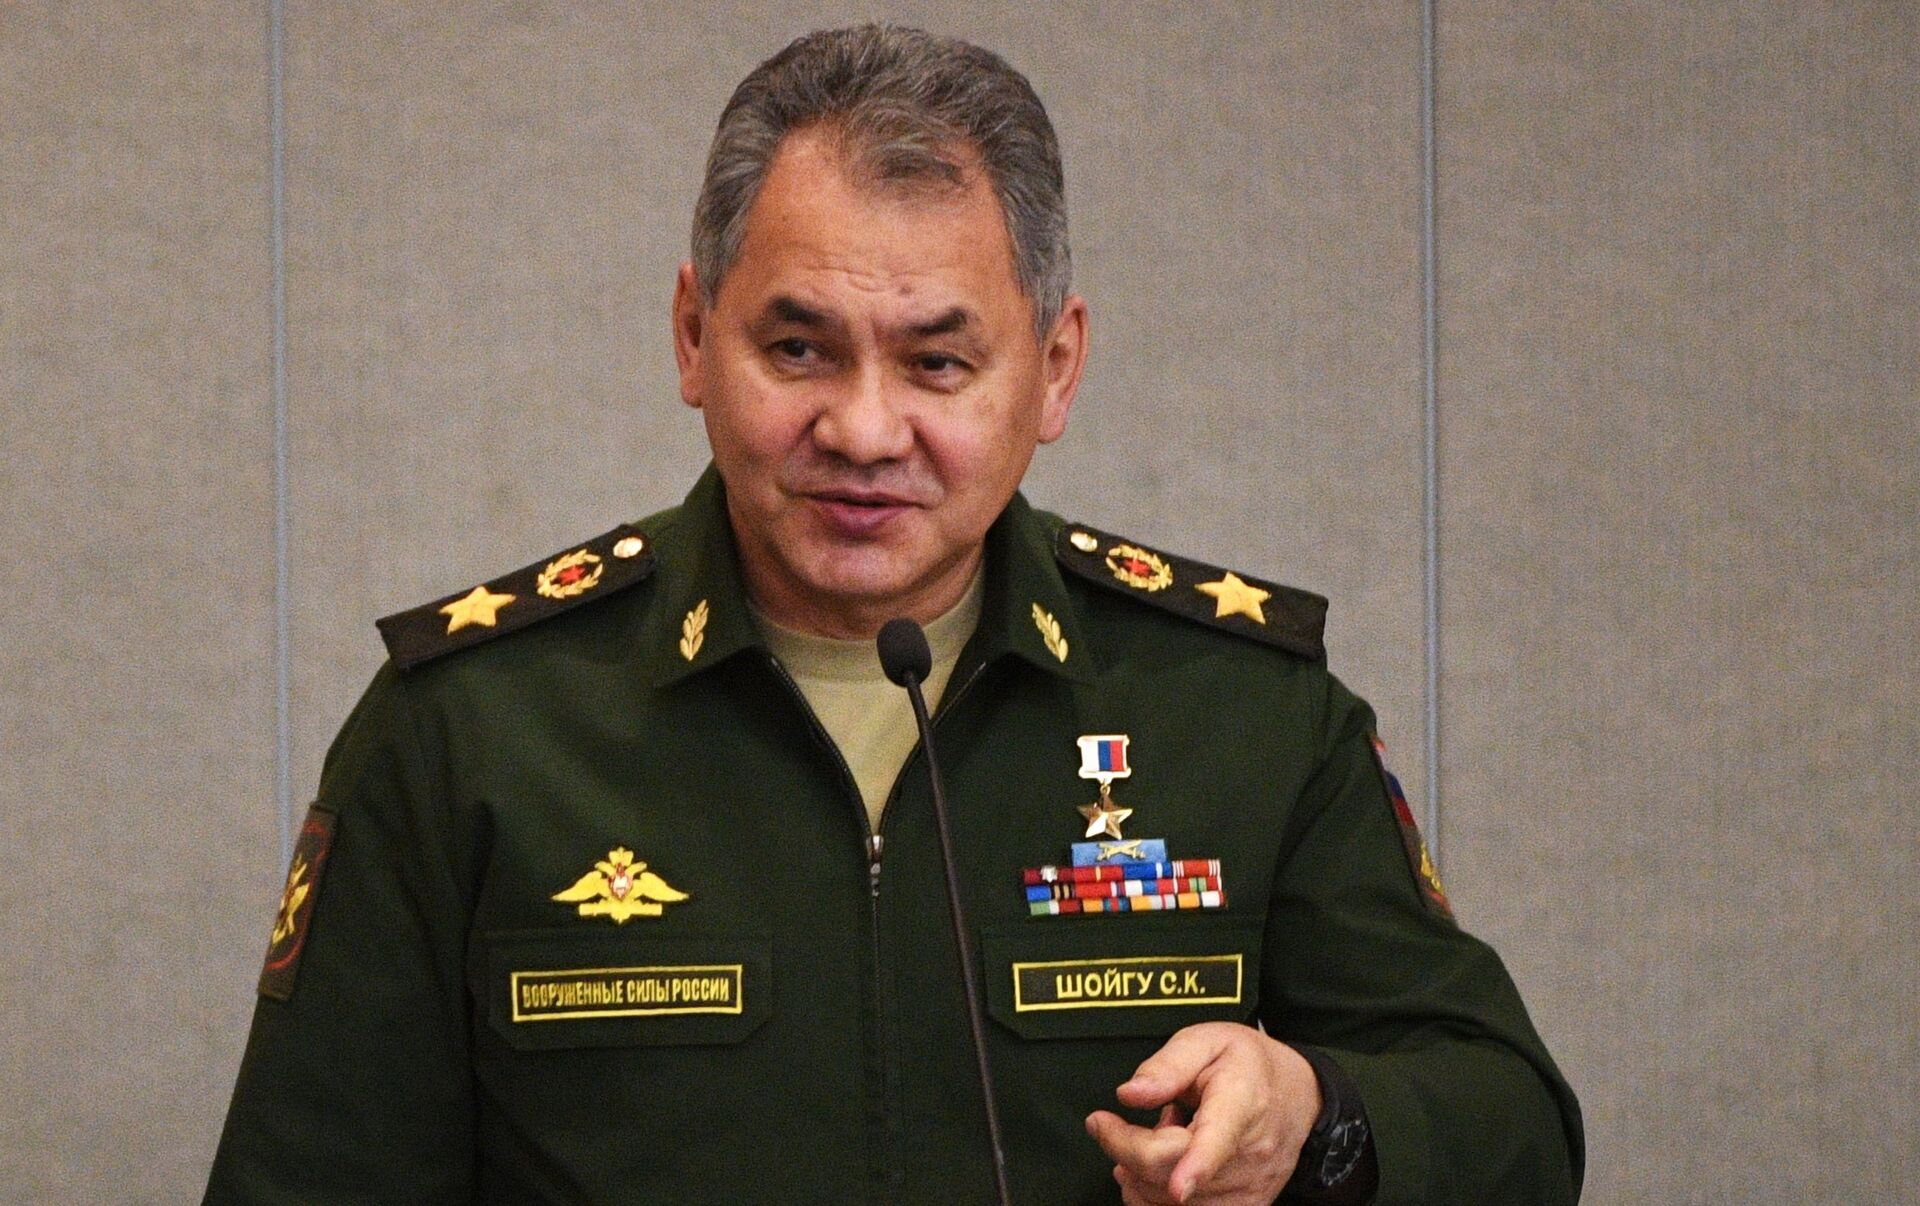 Генерал армии россия шойгу